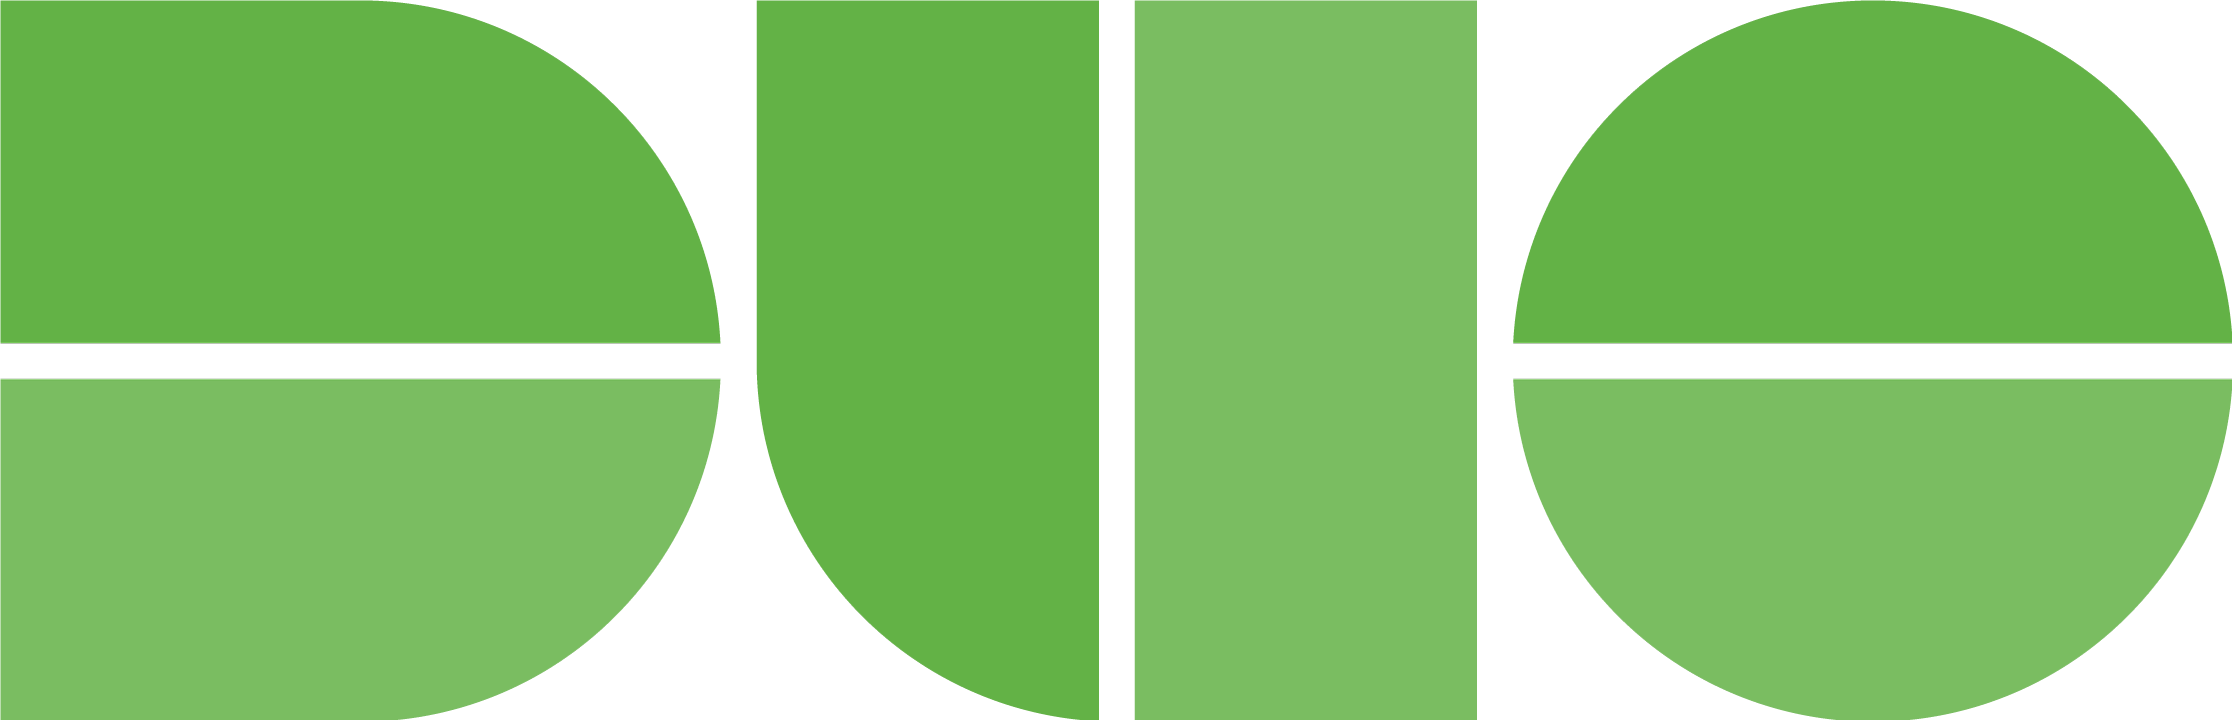 Duo Logo - Green